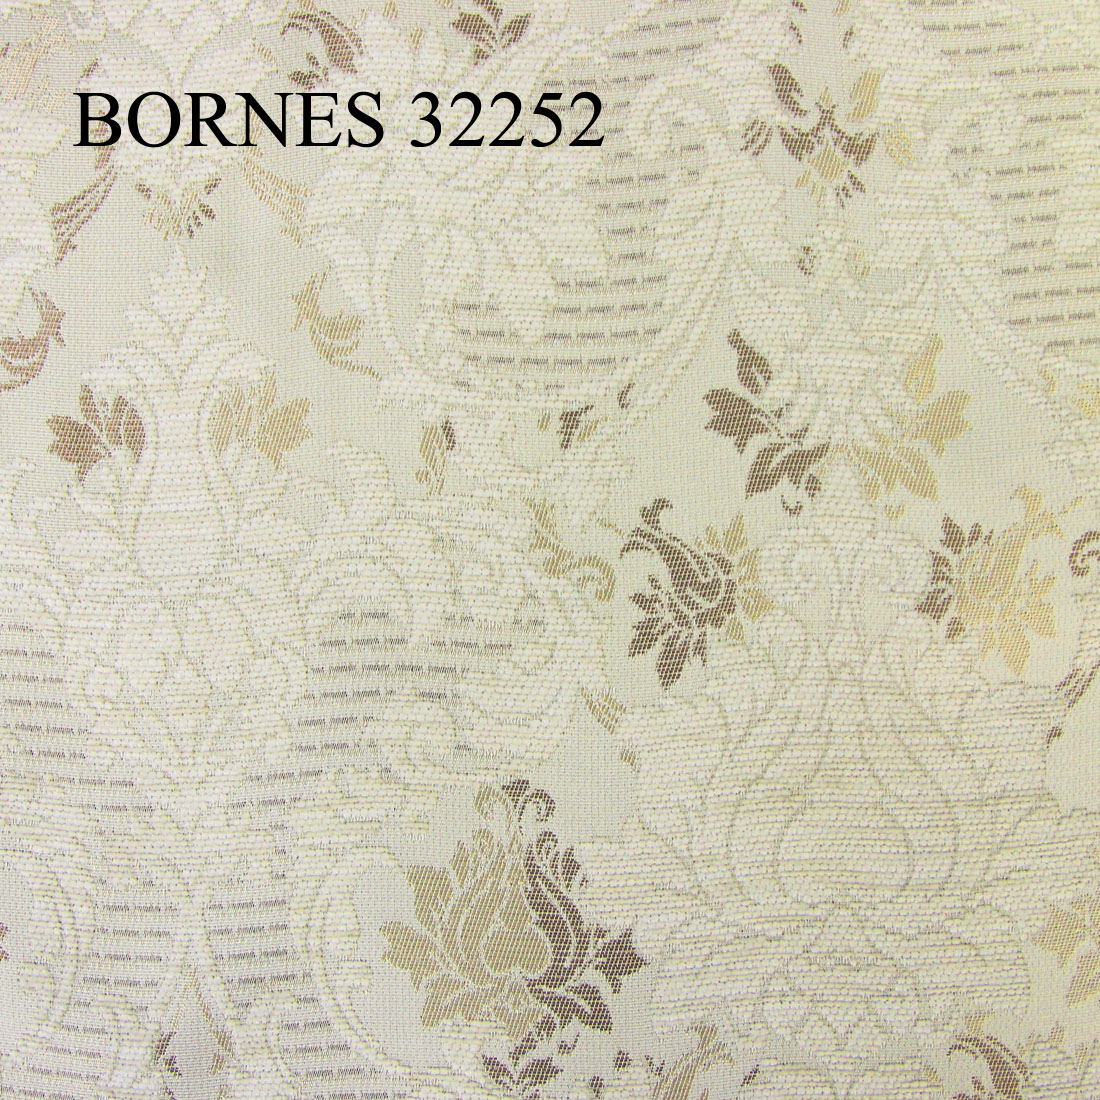 BORNES 32252